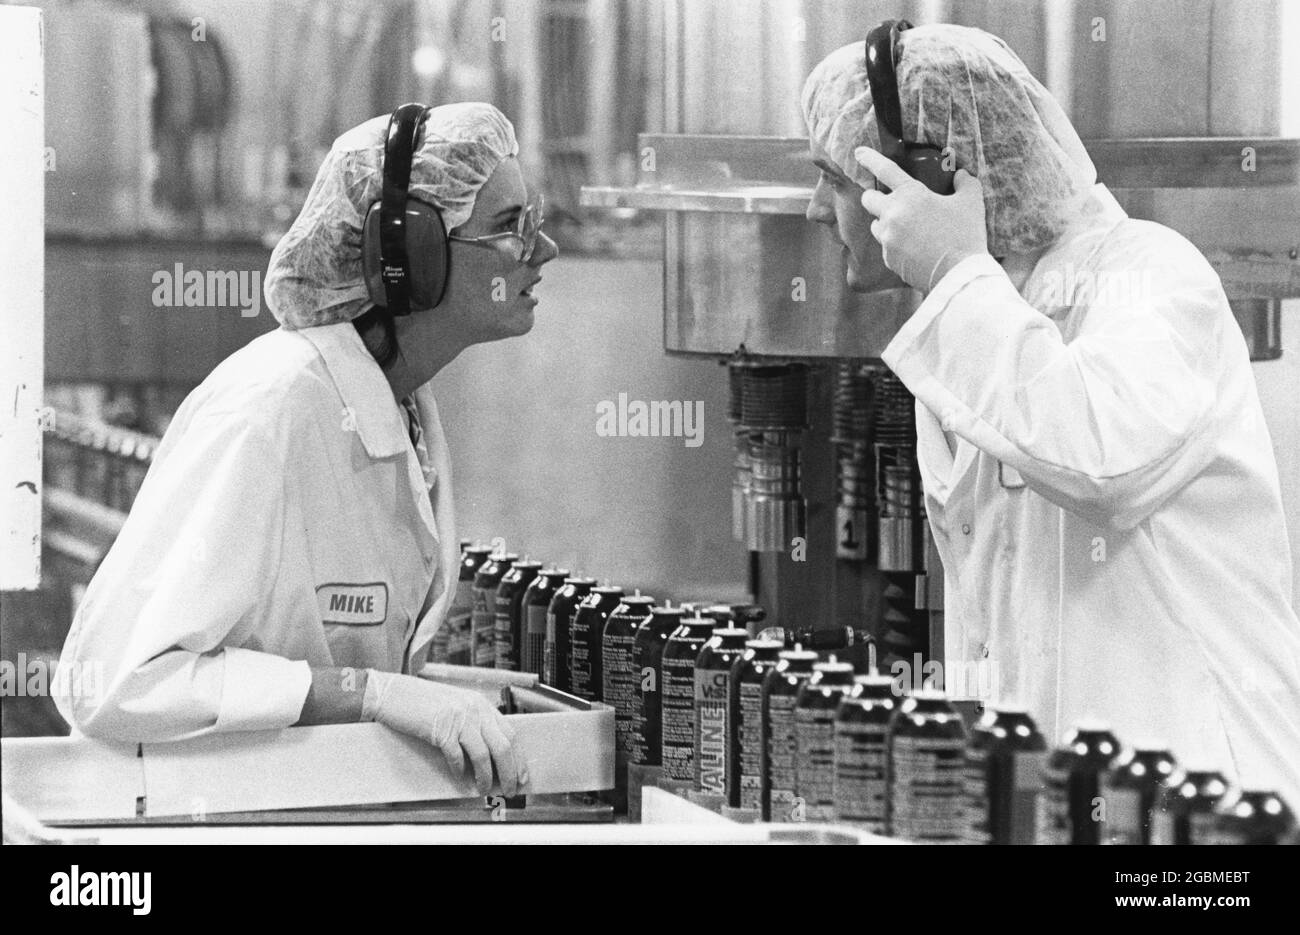 Waco Texas USA, um 1992: Mitarbeiter, die Schutzausrüstung wie Handschuhe, Haarnetze, Laborkittel und Gehörschutz tragen, sprechen über die Produktionslinie im Pharmawerk Allergan. ©Bob Daemmrich EH-0225 Stockfoto